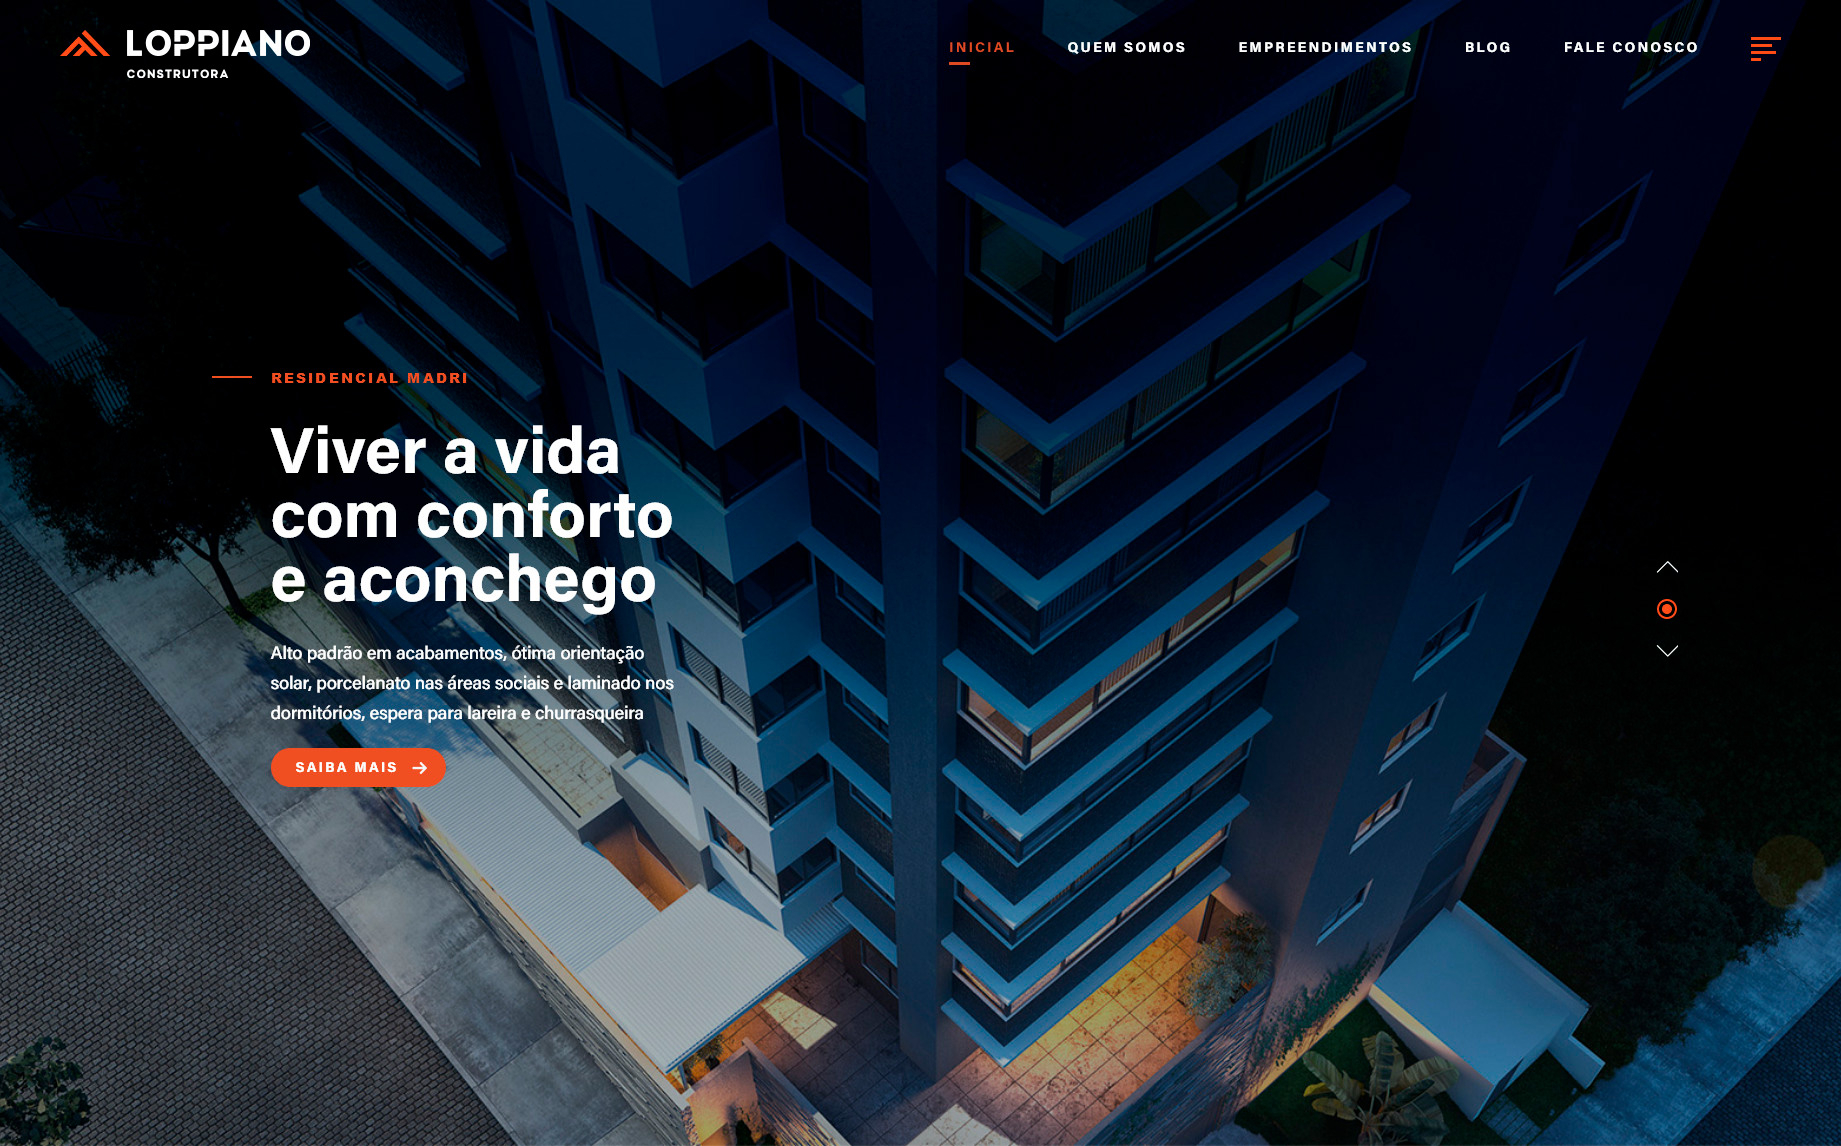 tela inicial do site construtoraloppiano.com.br